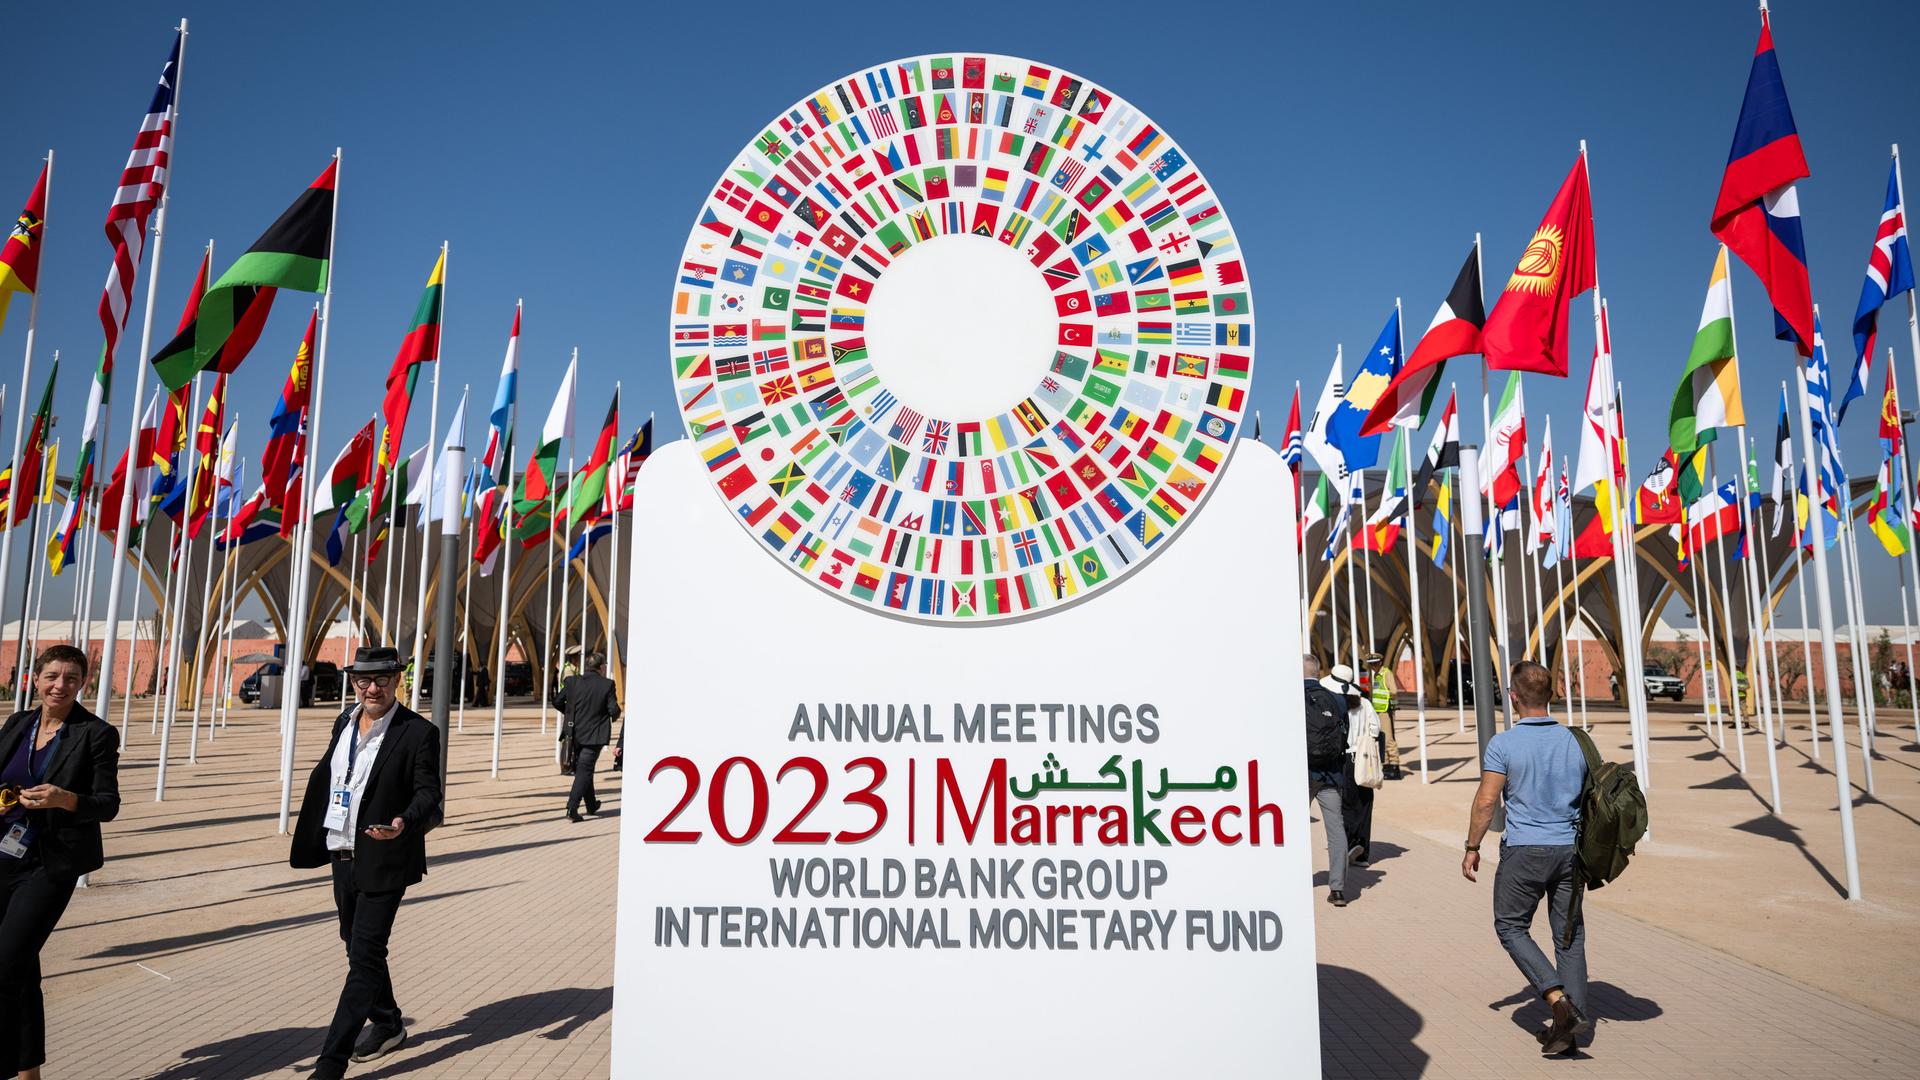 In Marrakesch steht ein Aufsteller mit der Aufschrift "Annual Meetings 2023 Marrakech - World Bank Group - International Monetary Fund".